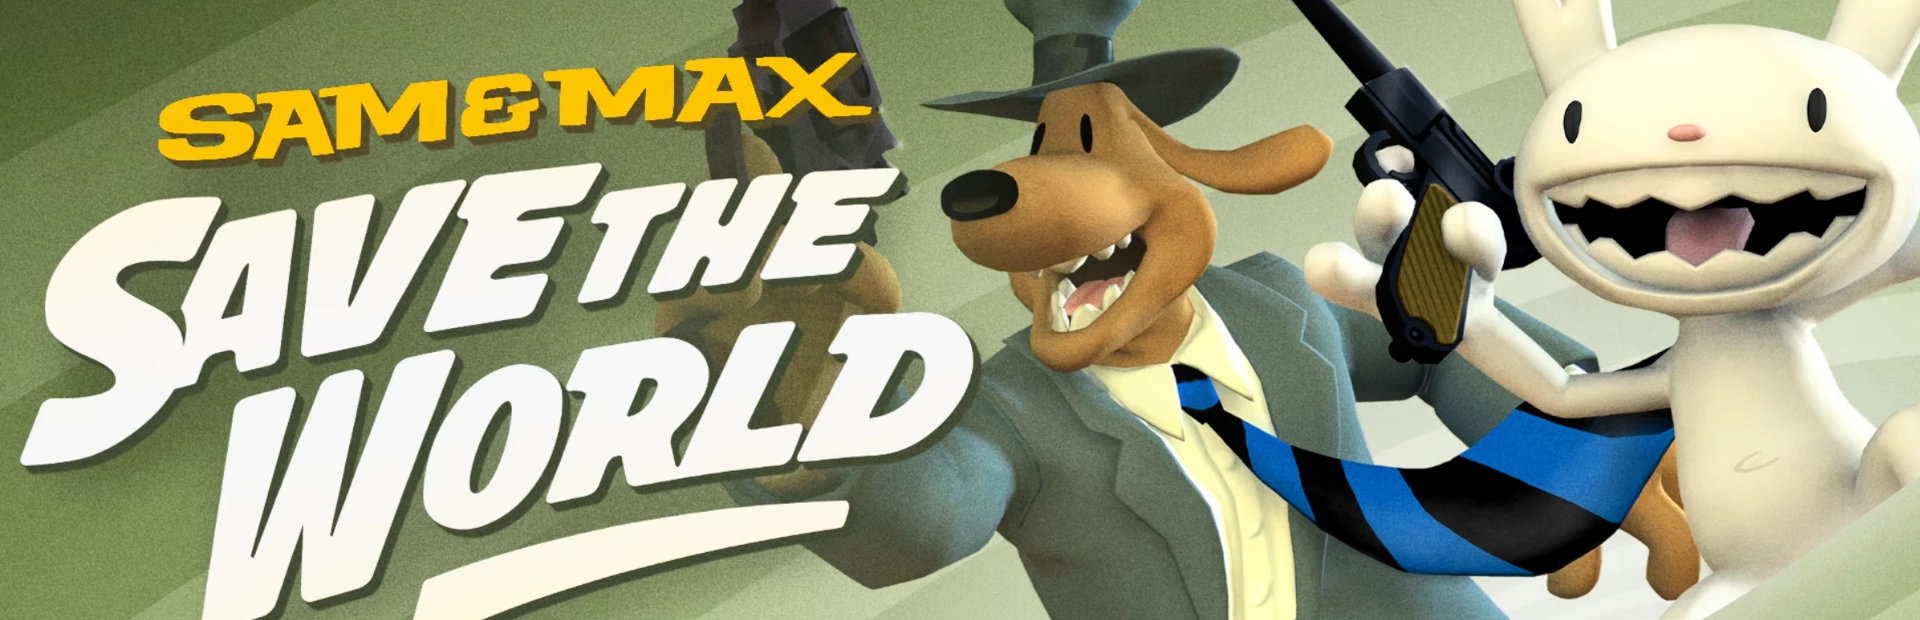 دانلود بازی Sam & Max Save the World برای کامپیوتر | گیمباتو